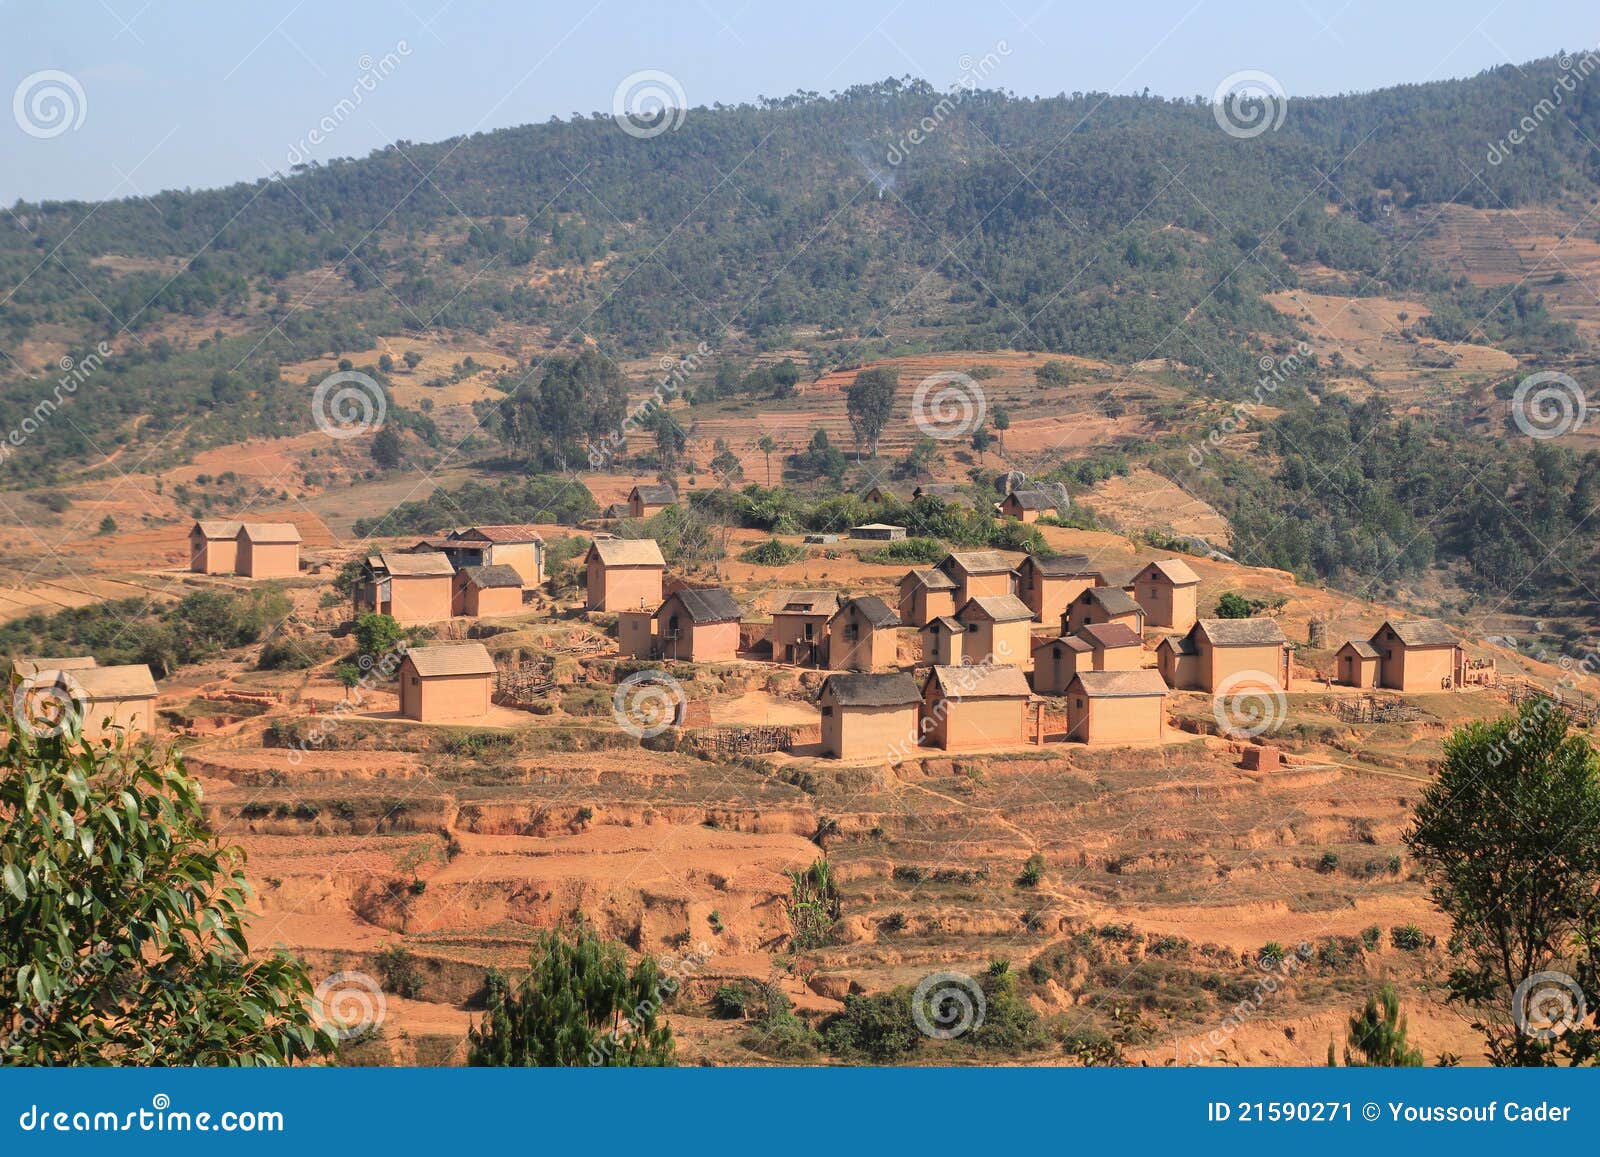 Il Madagascar. Piccolo villaggio agricolo nel Madagascar